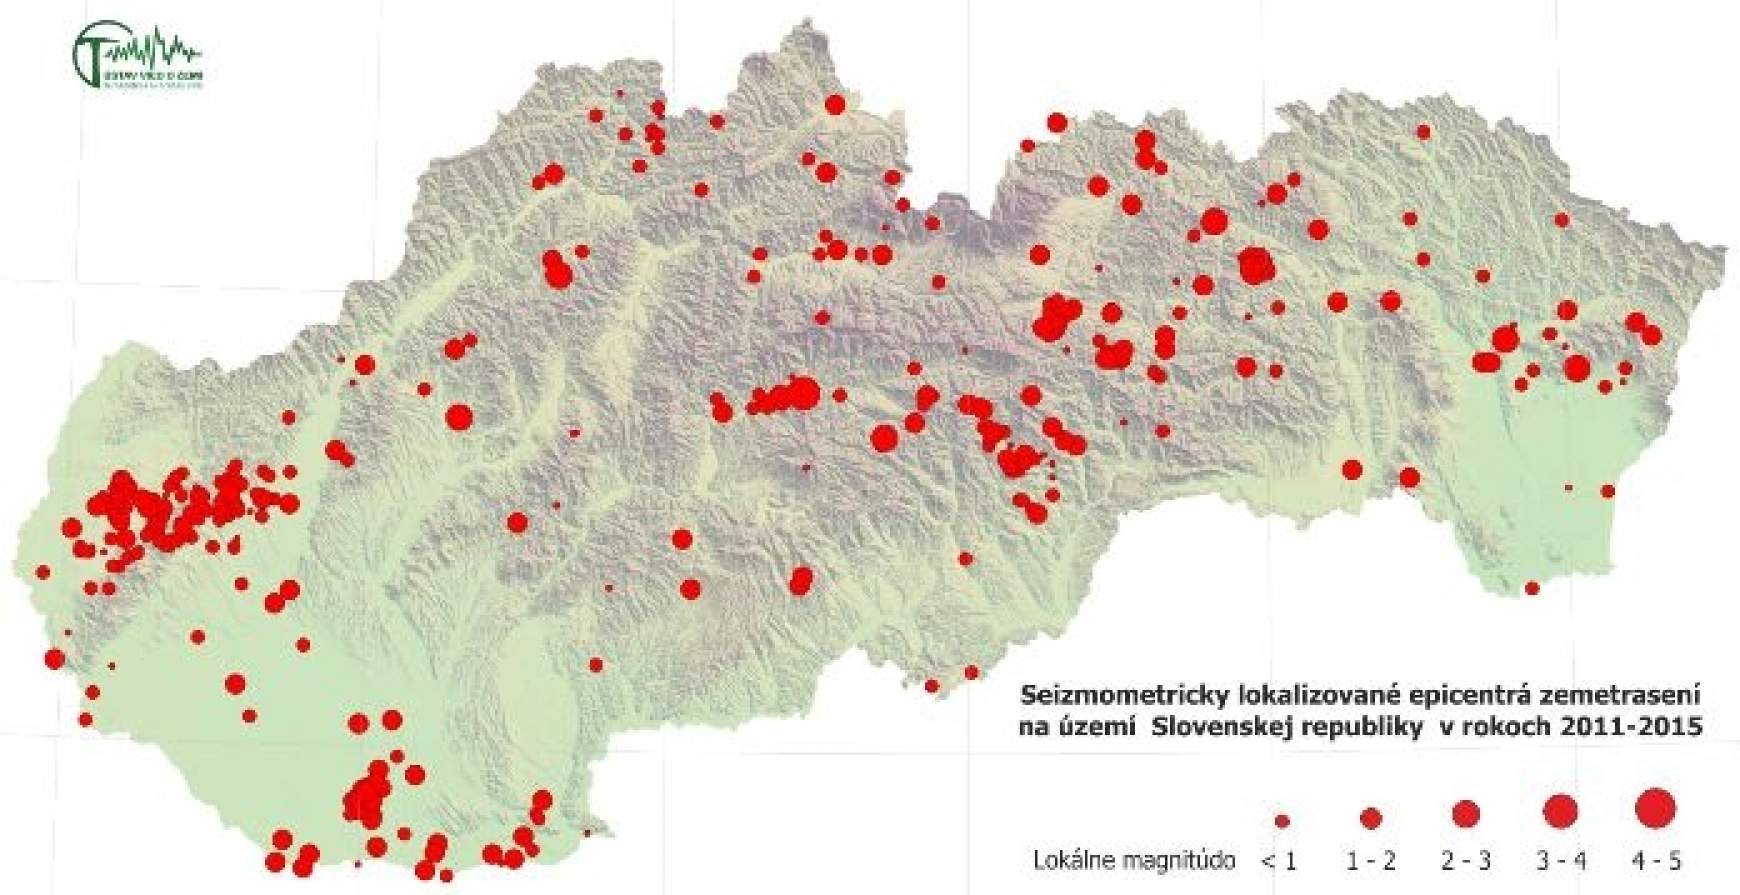 Földrengések a mai Szlovákia területén